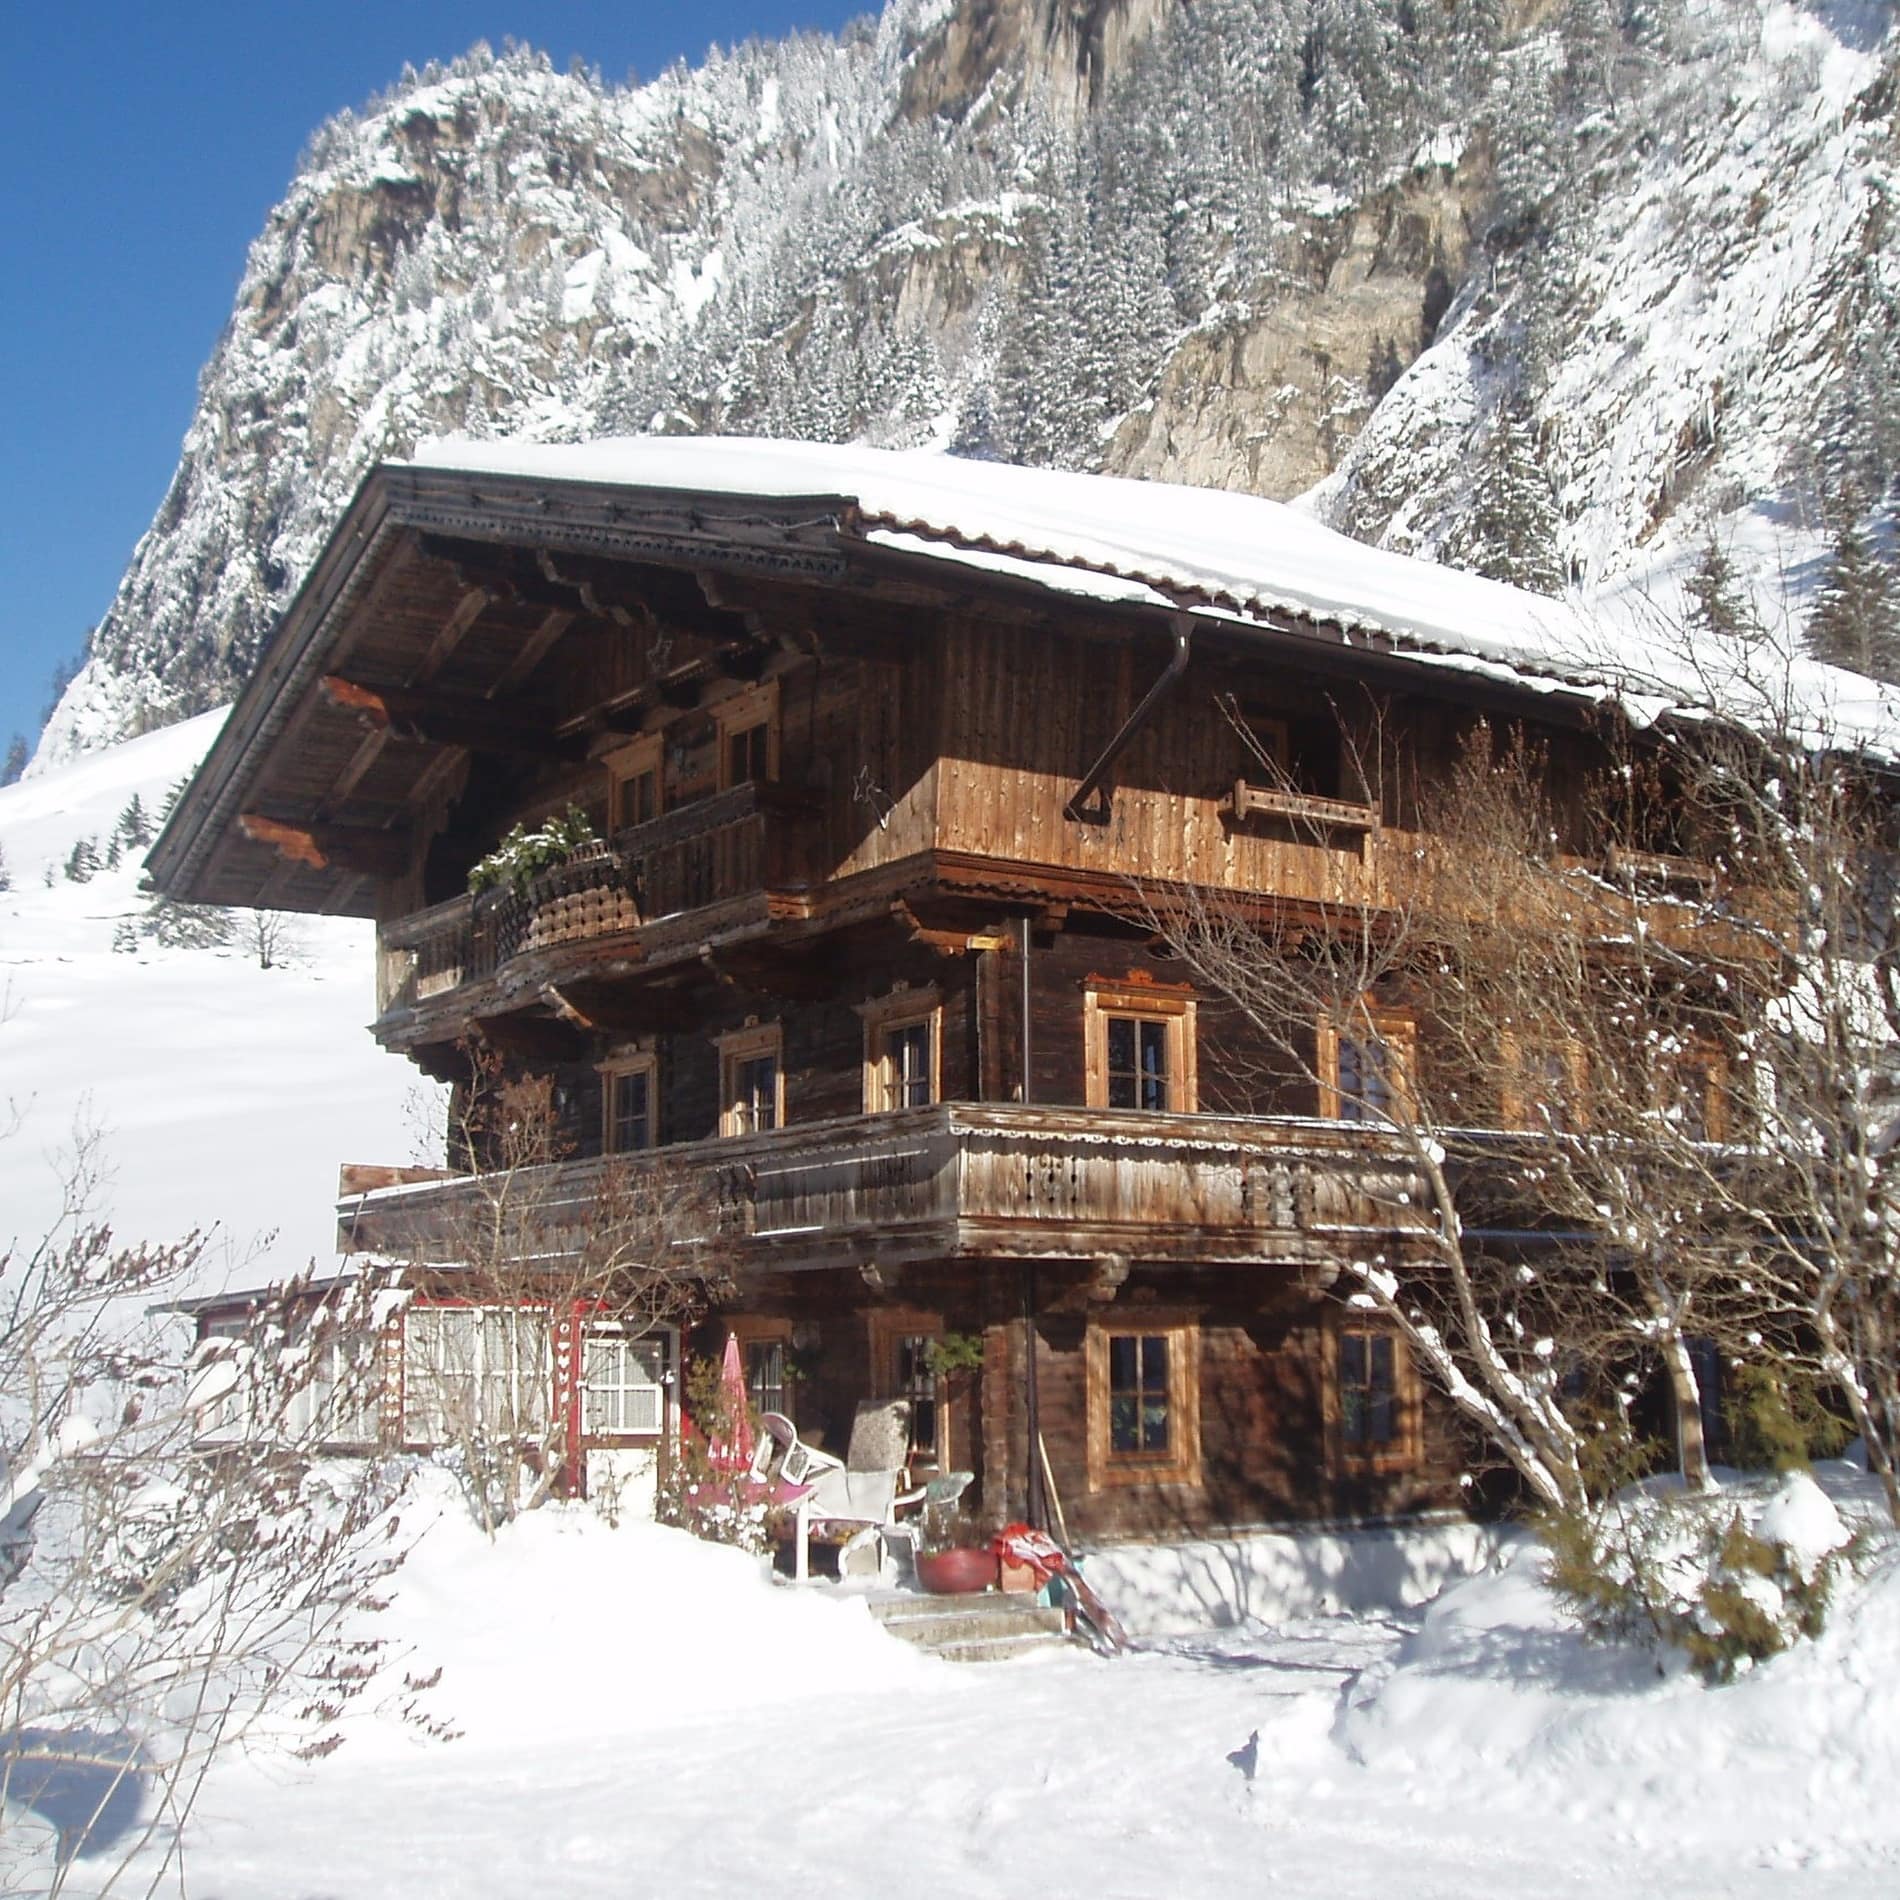 Traditionelles Tiroler Holzhaus mit umlaufendem Balkon in Schneelandschaft 